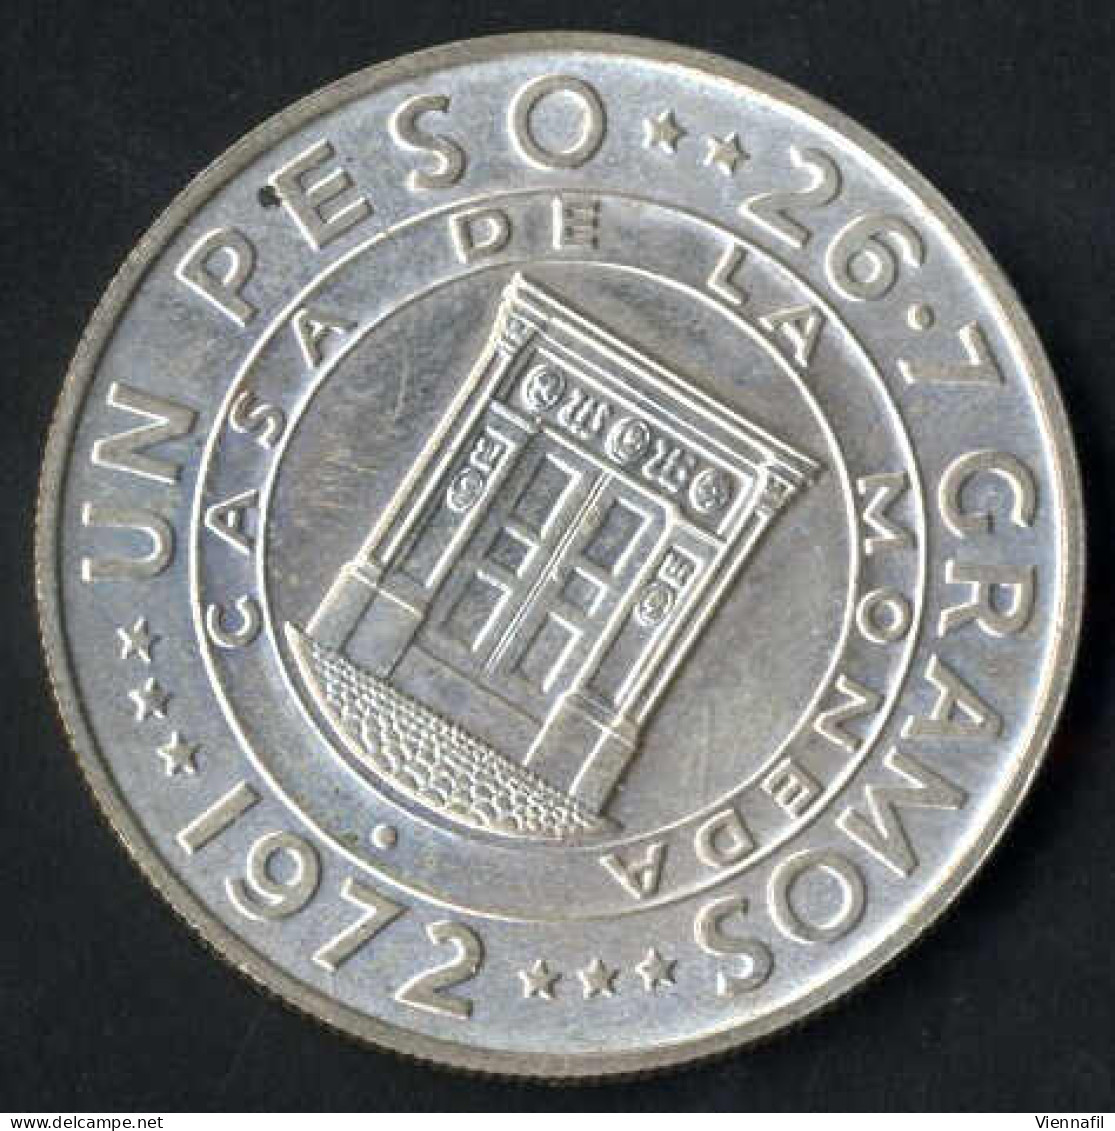 10 Dollar Johannes Paul II,1979, Und Zwei Silbermünzen 1 Peso 25 Jahre Zentralbank, 1972, Unzirkuliert Und PP, Feingewic - Dominikanische Rep.